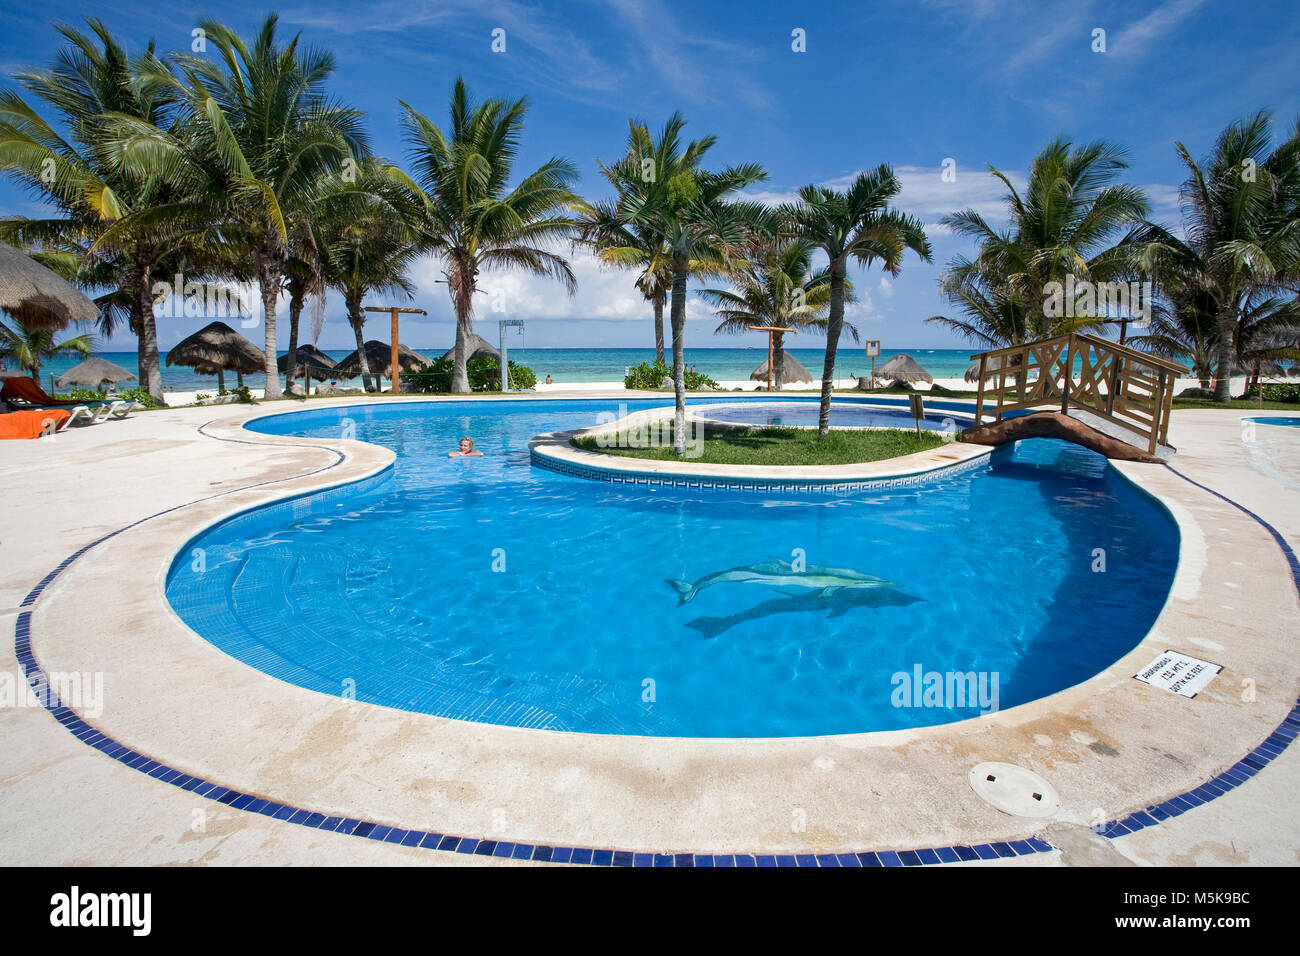 Piscina vom el Shangri La Hotel, Playa del Carmen, Mexiko, Karibik | agrupación de Shangri La Hotel, Playa del Carmen, México, el Caribe Foto de stock